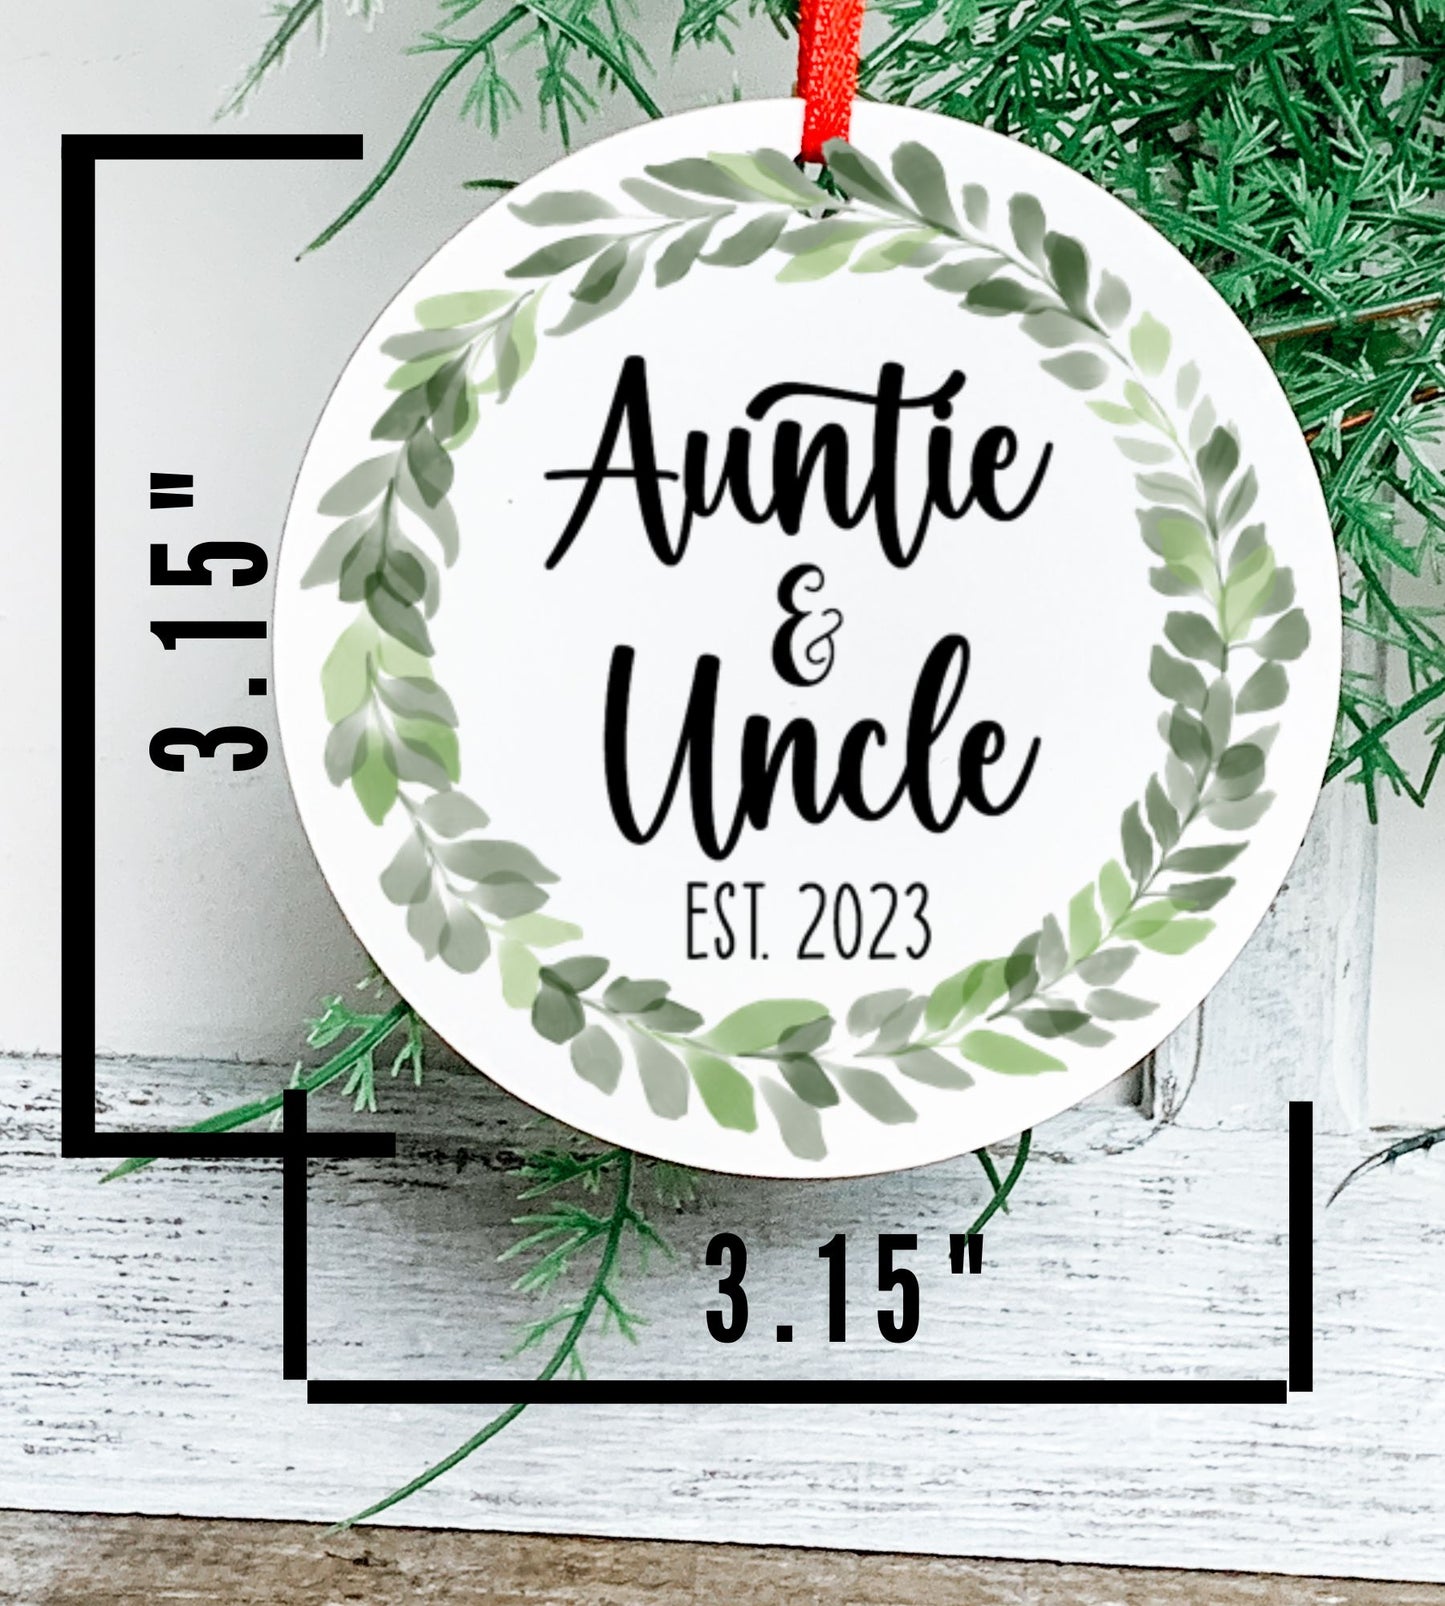 Auntie and Uncle Est Pregnancy Announcement Ornament